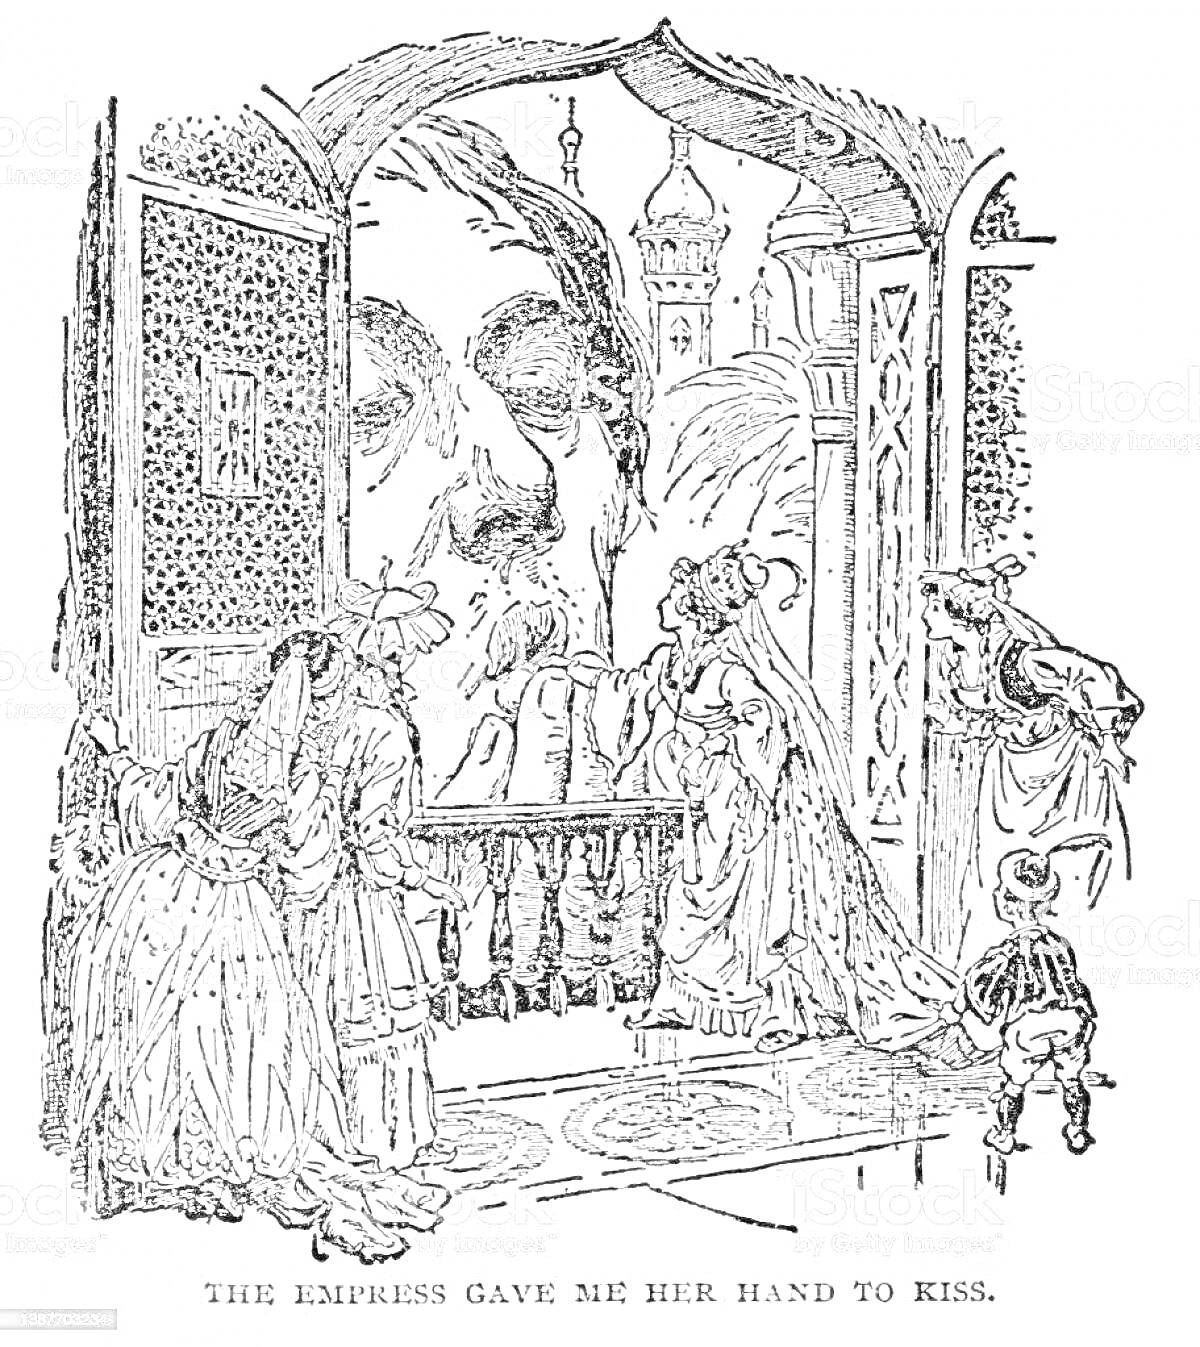 Гулливер целует руку императрицы, вид через окно на лицо Гулливера, окружающие его императрица и несколько придворных